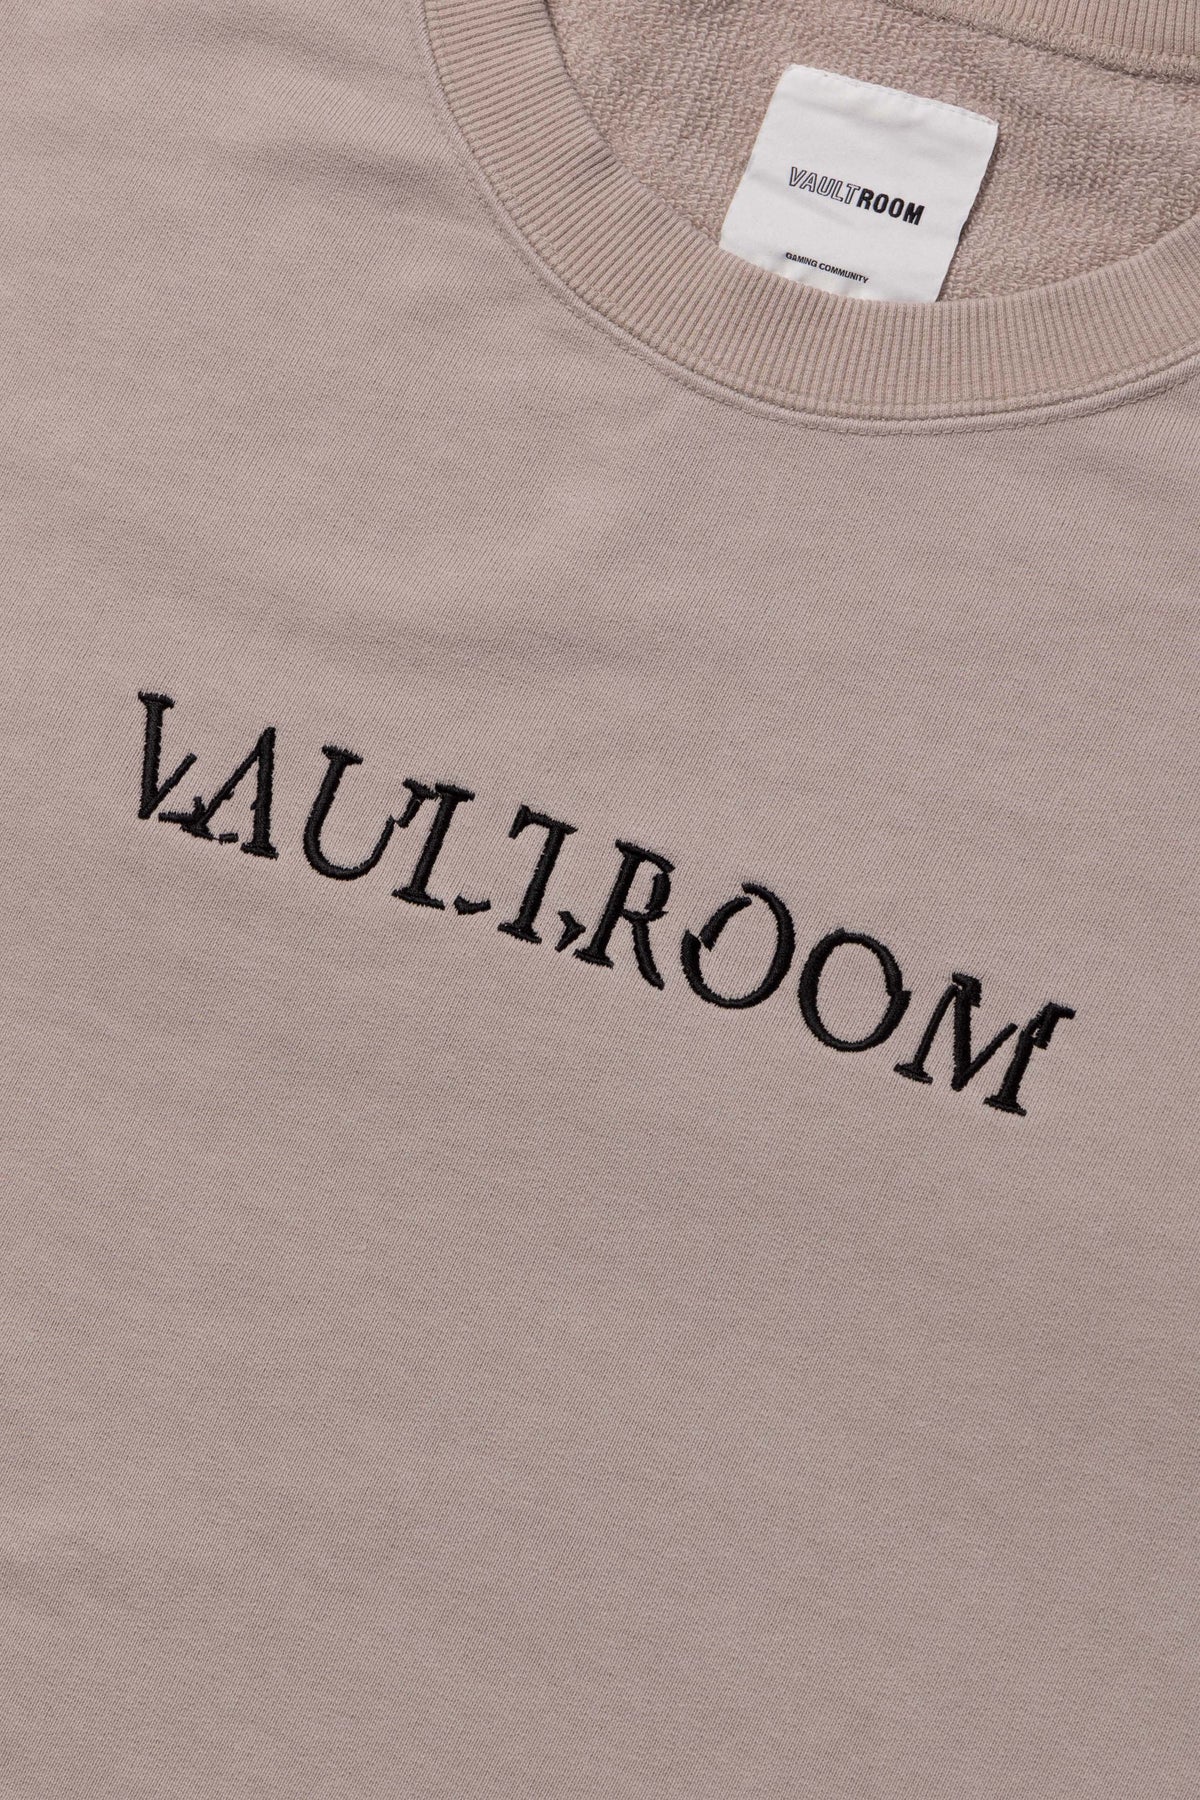 vaultroom カットオフベスト